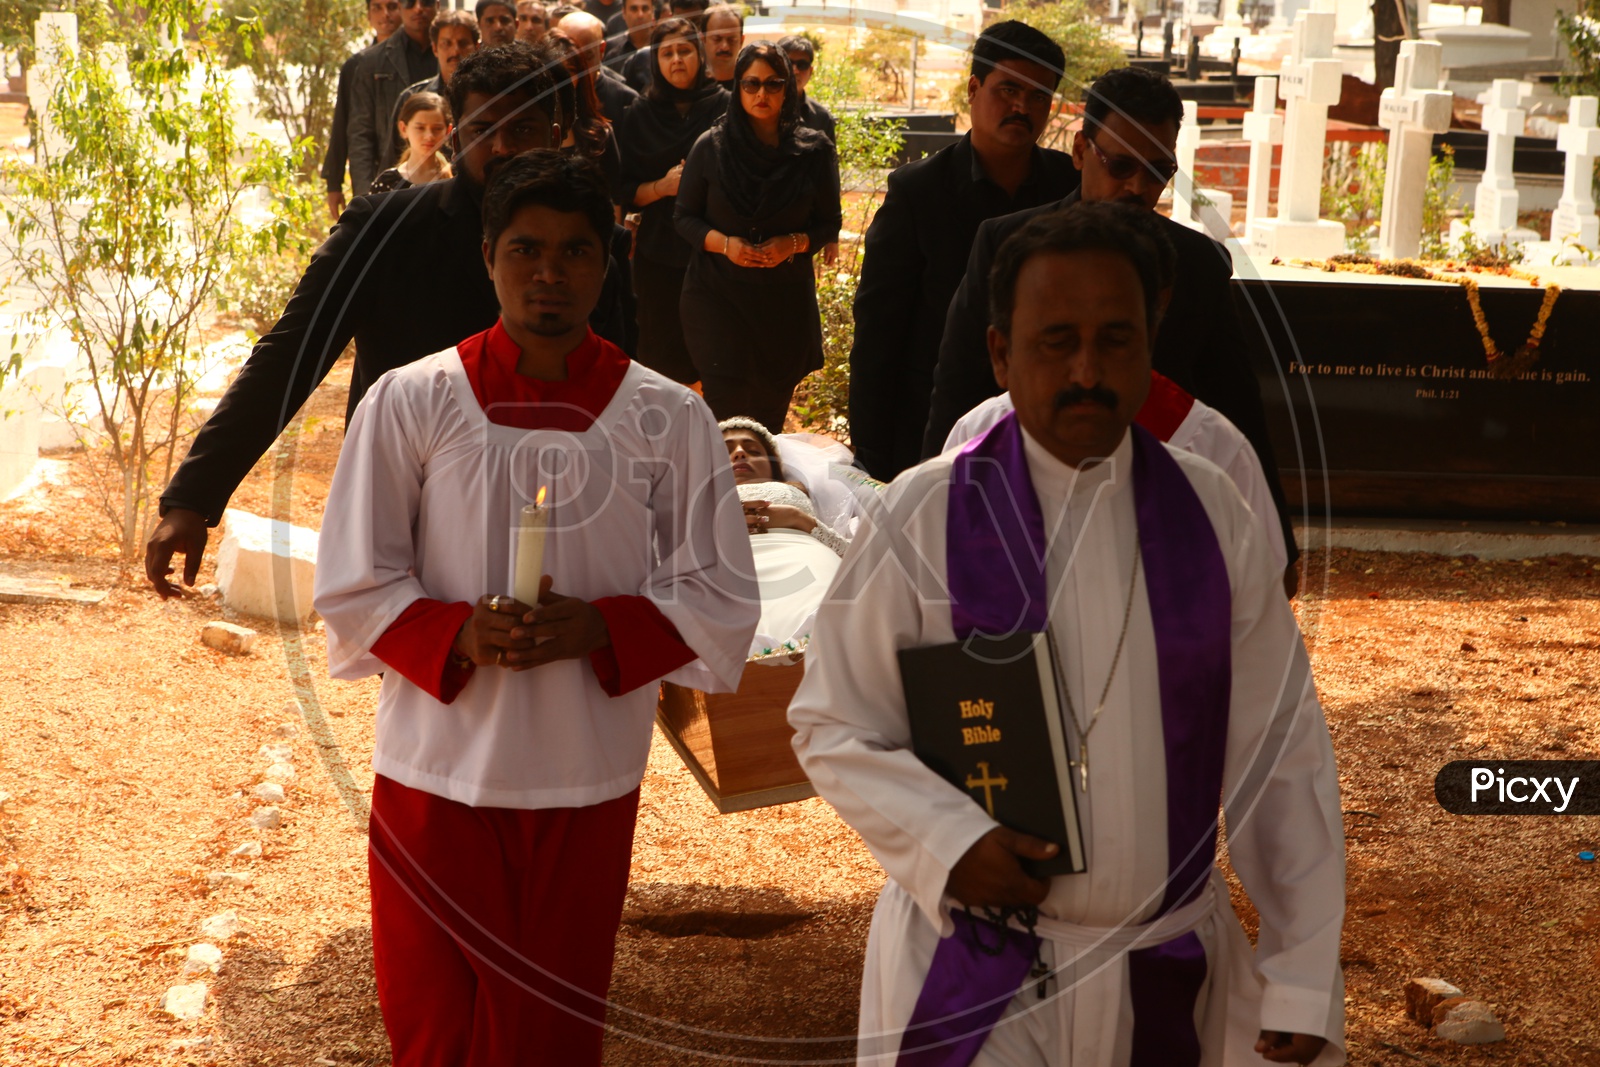 Funeral Ceremony In a Crematorium